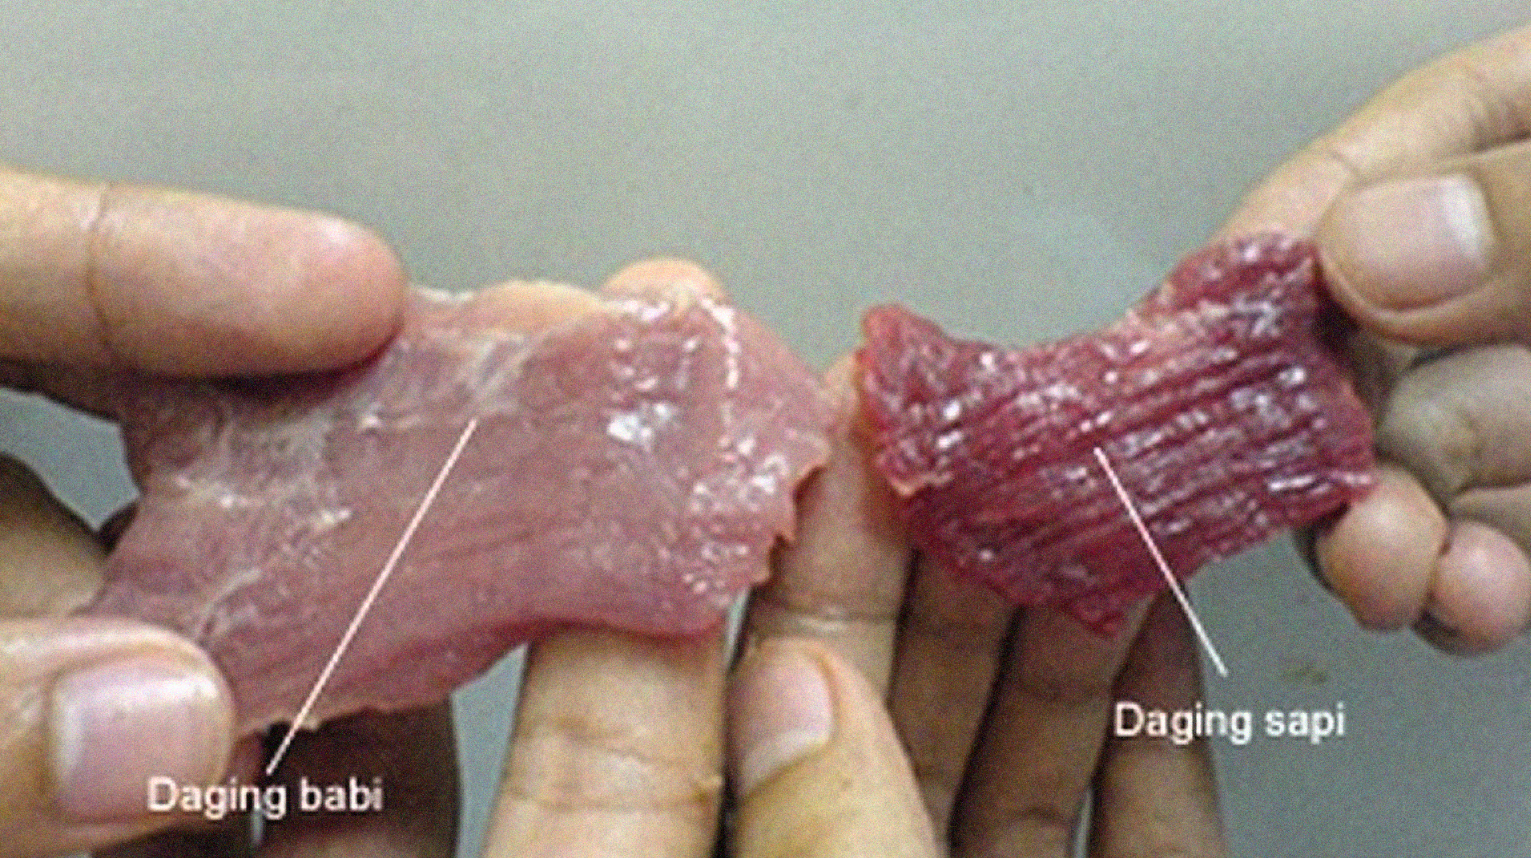 Daging Sapi dan daging babi perlu dicermati perbedaannya. (Foto: mui)